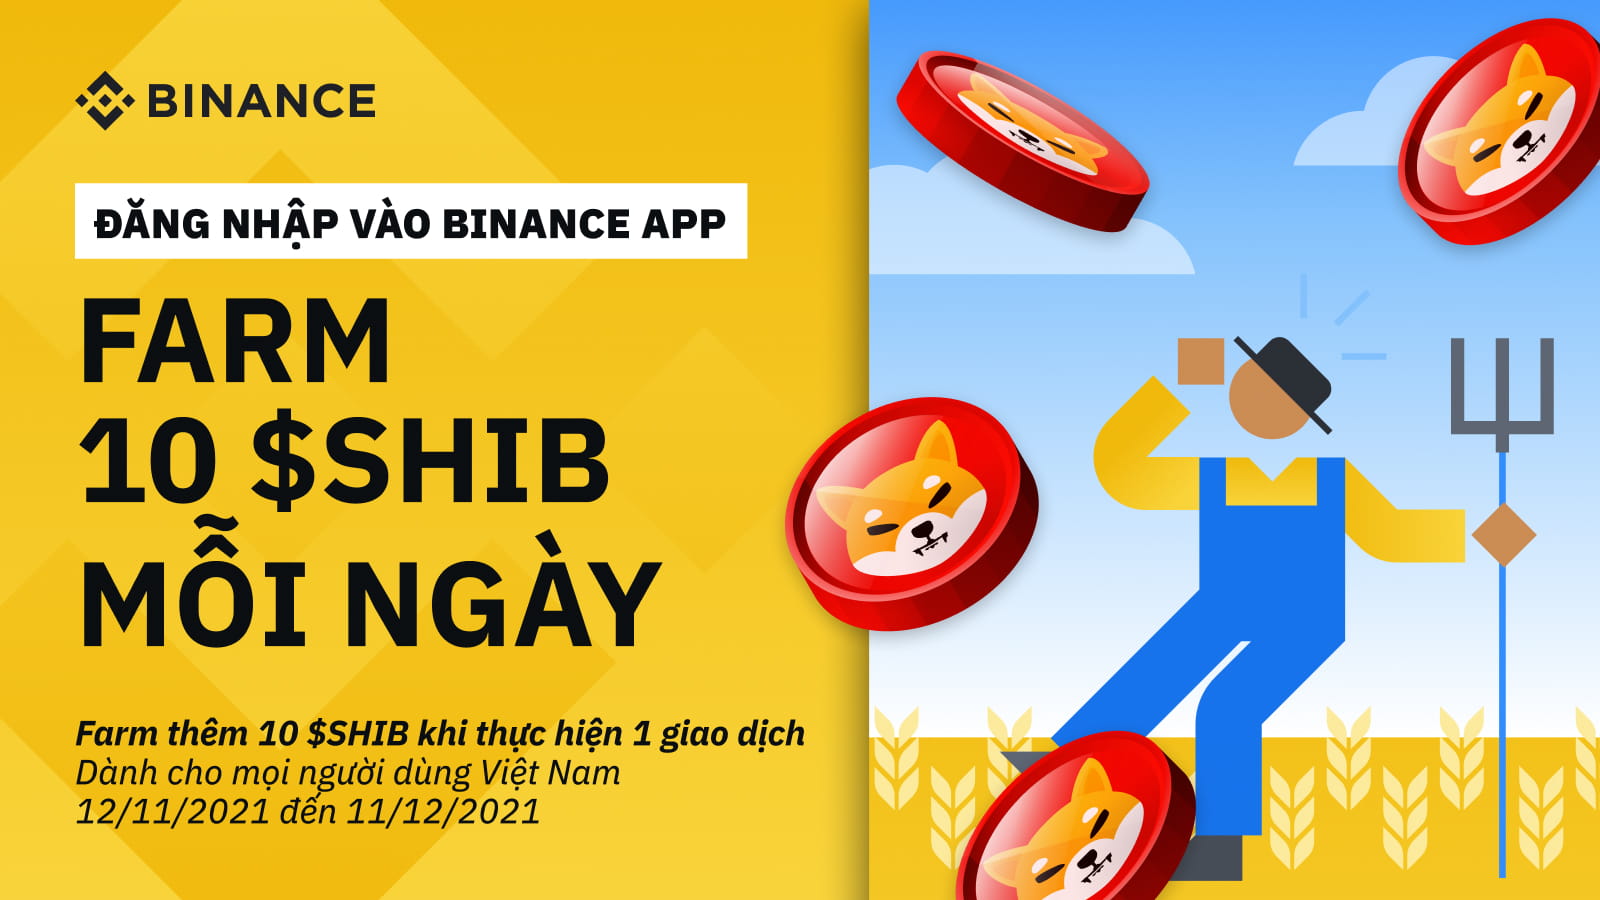 Farm Shiba Inu ($SHIB) mỗi ngày với ứng dụng điện thoại Binance